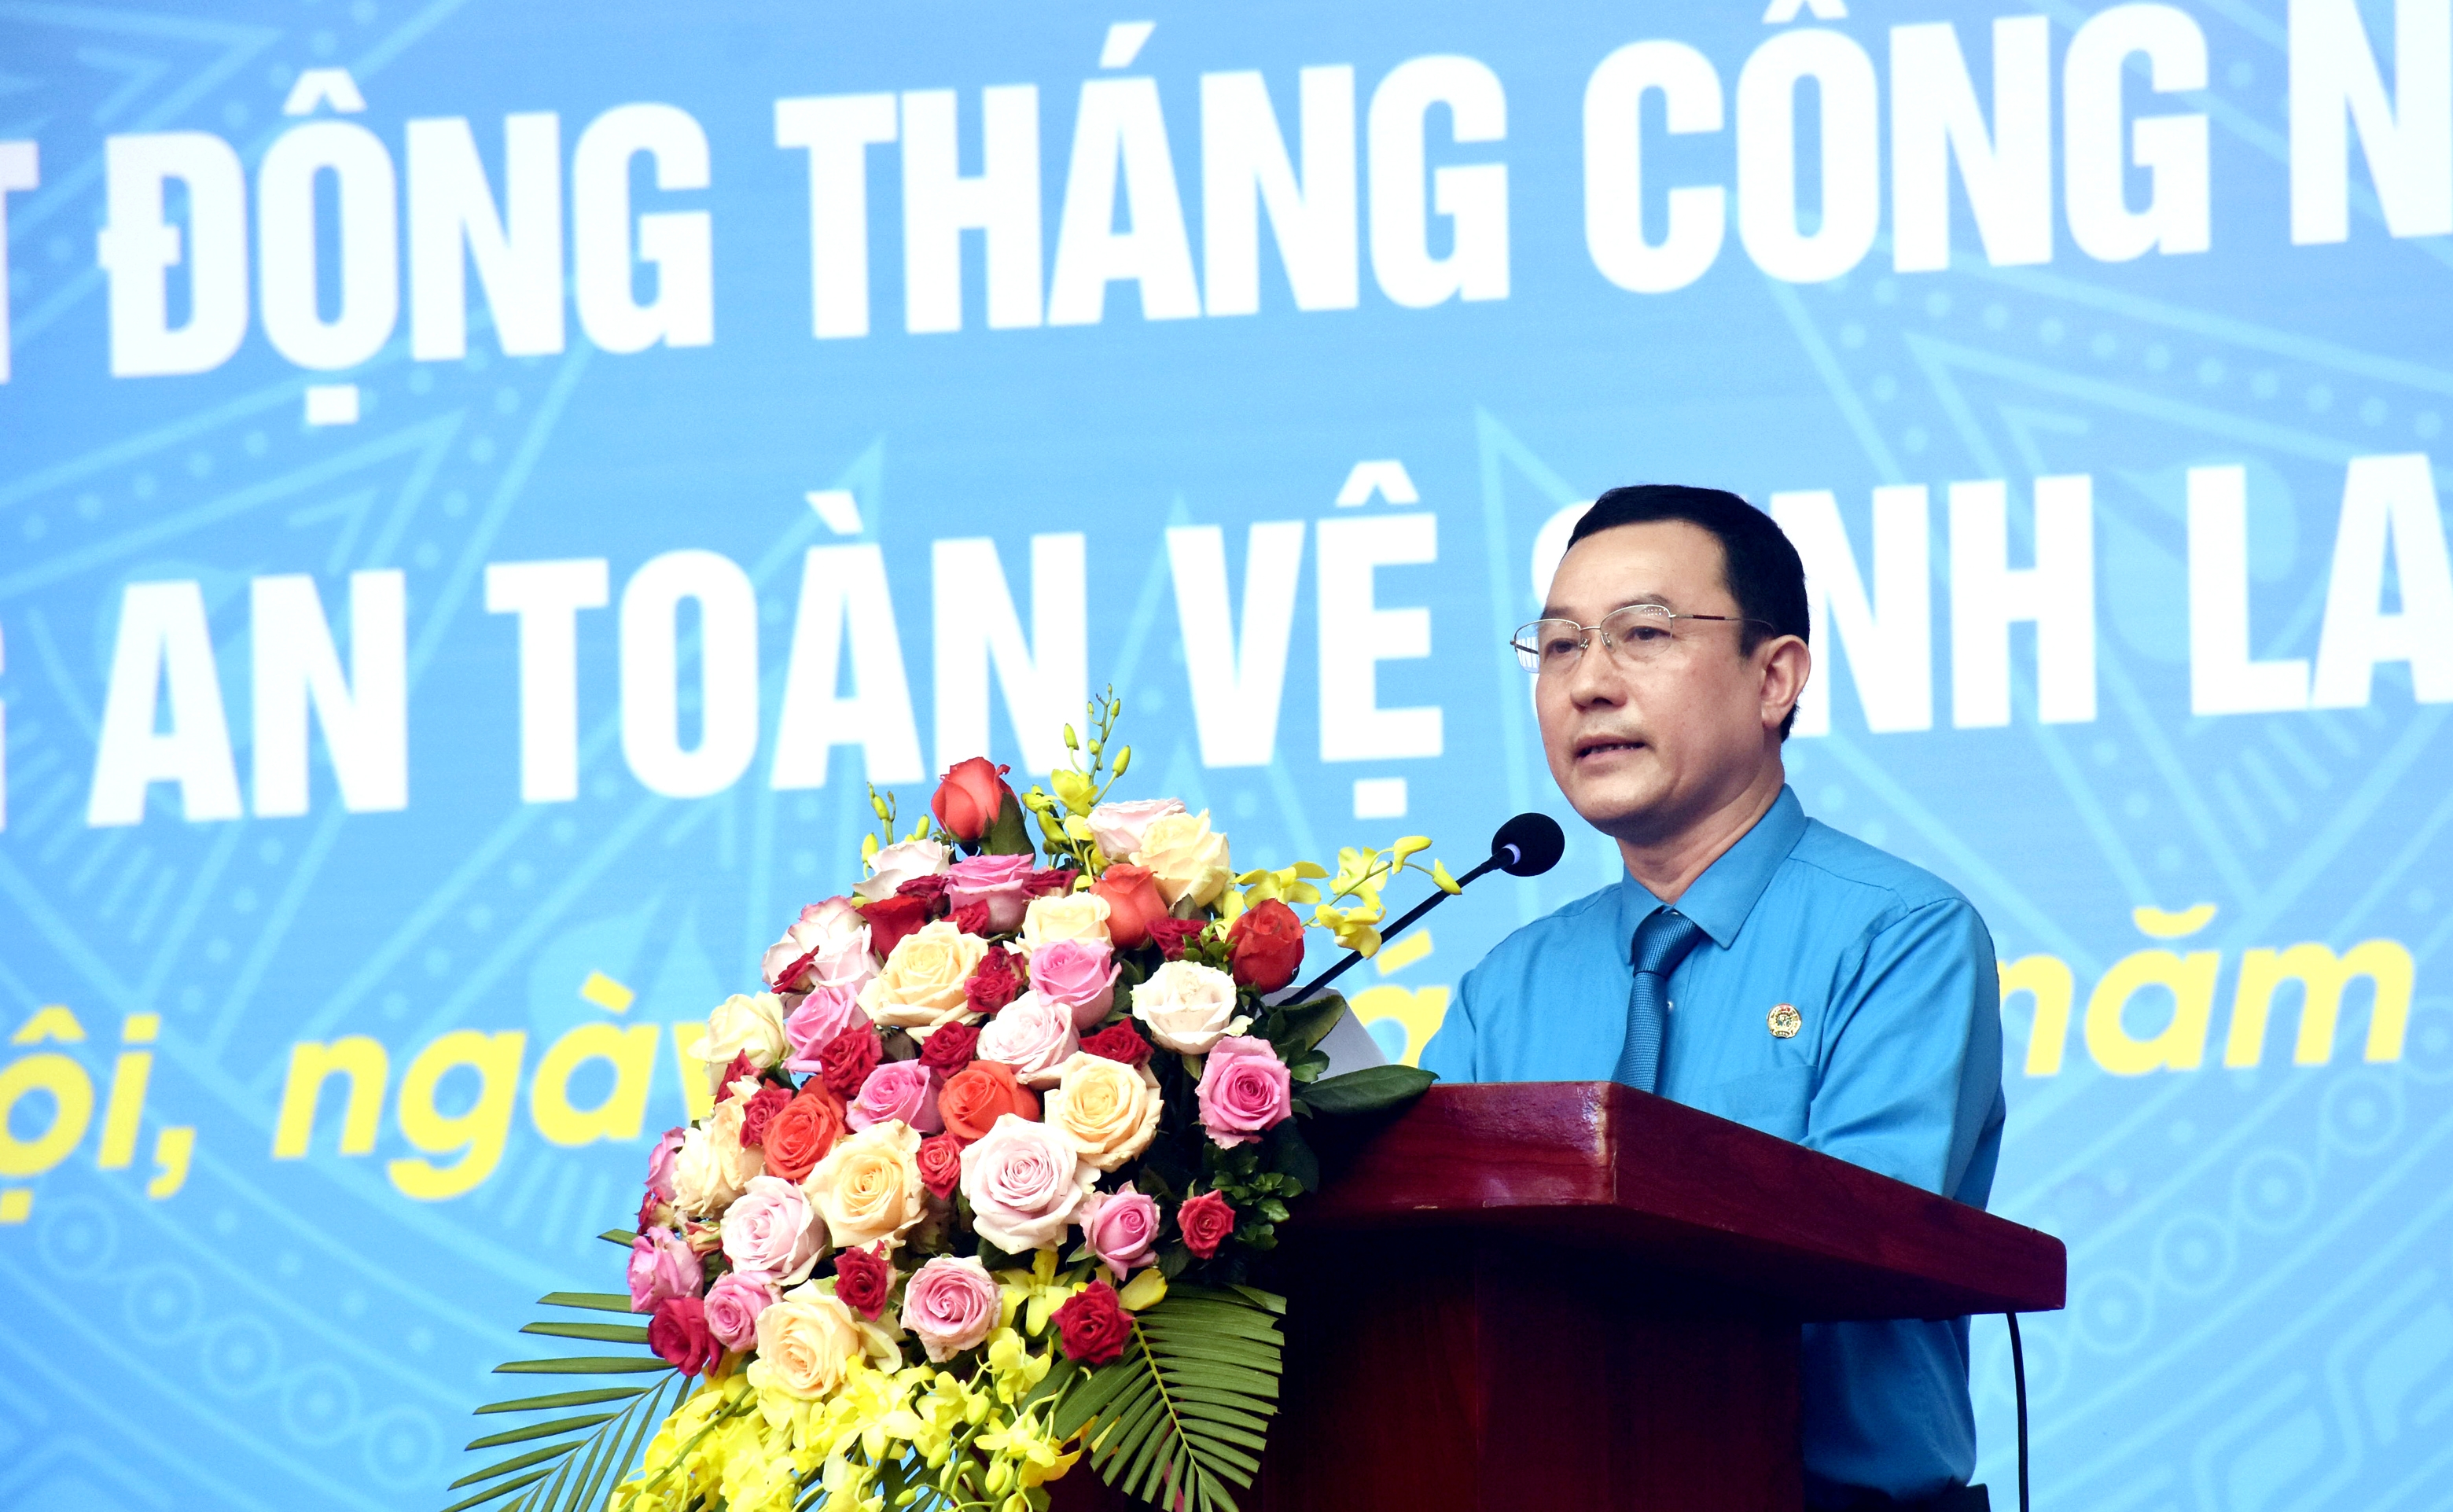 Đang trực tuyến: Phát động Tháng Công nhân năm 2021 tới công nhân lao động các Khu công nghiệp và chế xuất Hà Nội